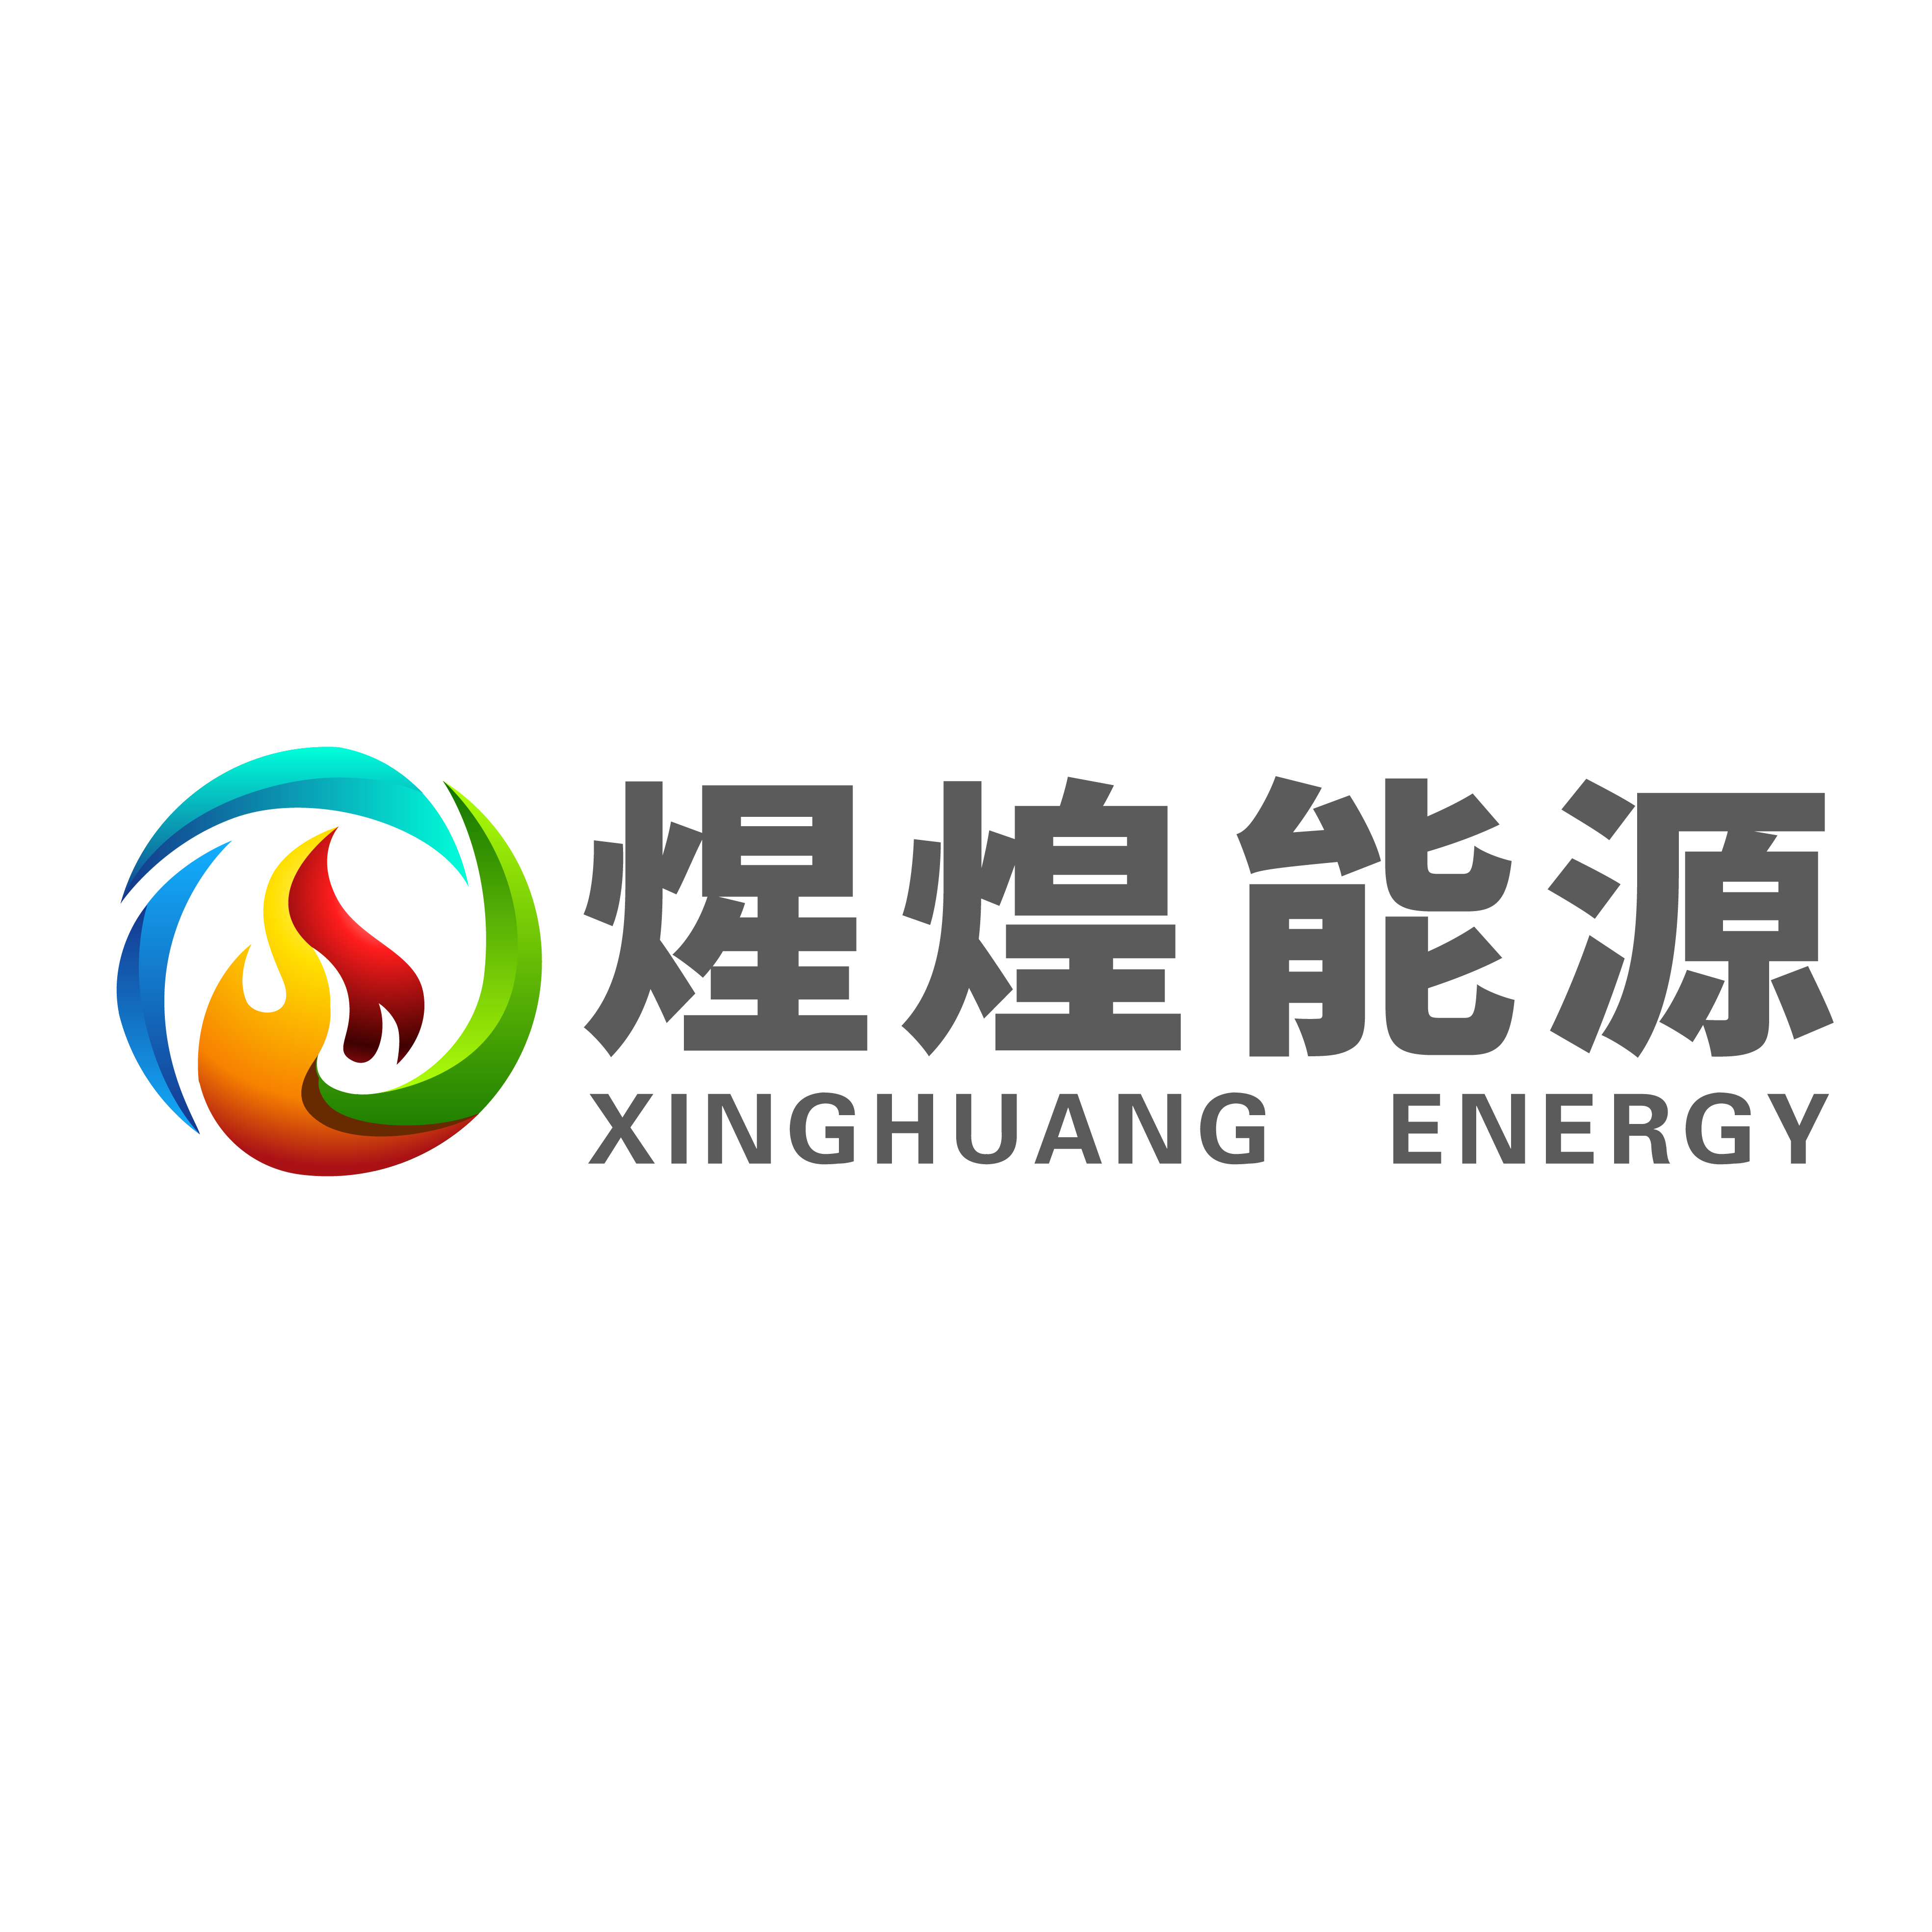 廣東煋煌新能源有限公司